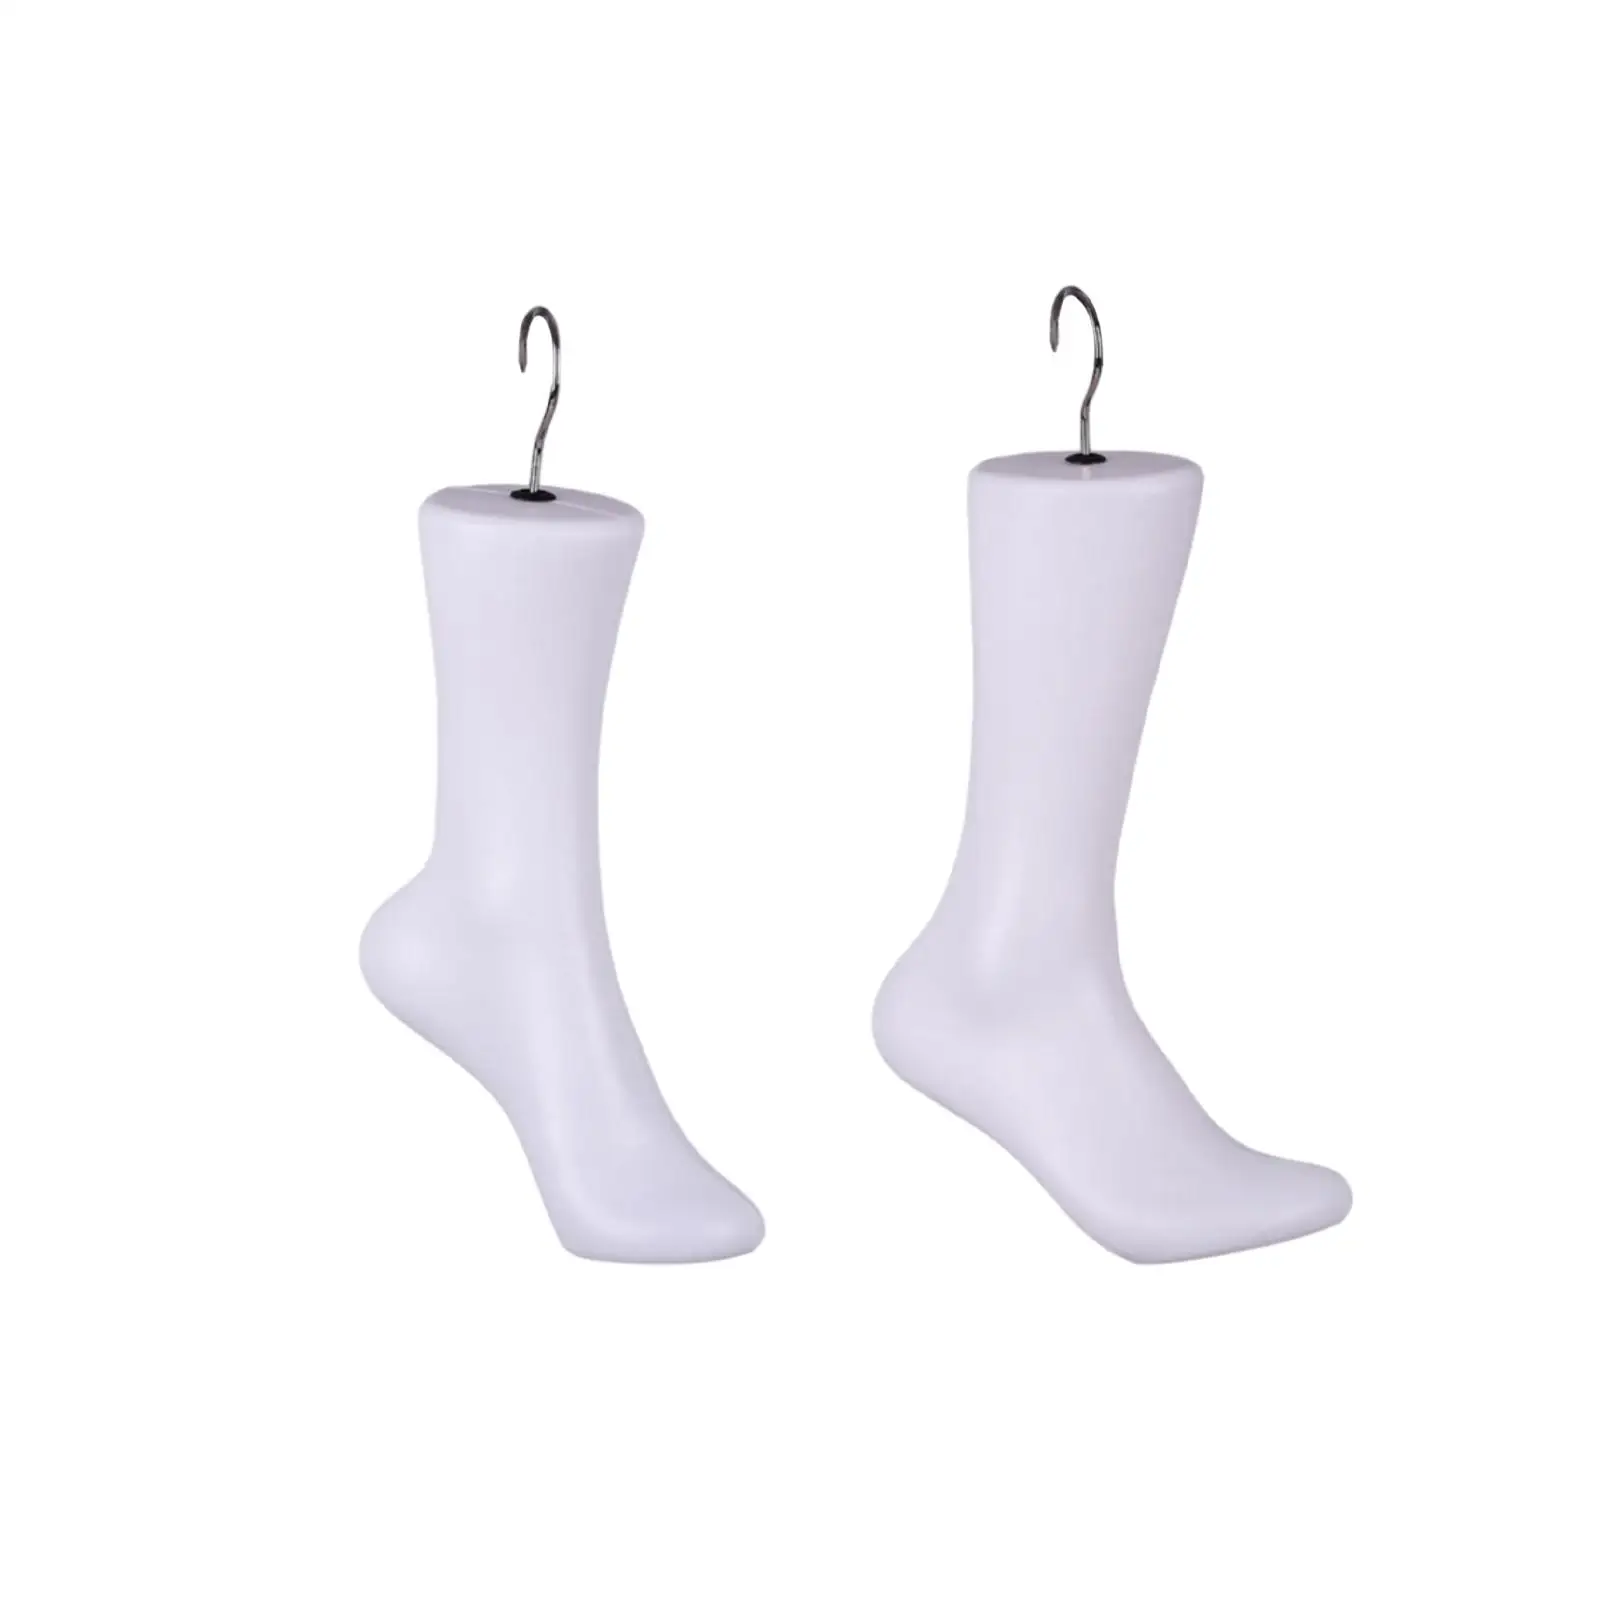 Sock Model Mannequin Feet Model Lifelike Sock Display for Retail Shop Socks